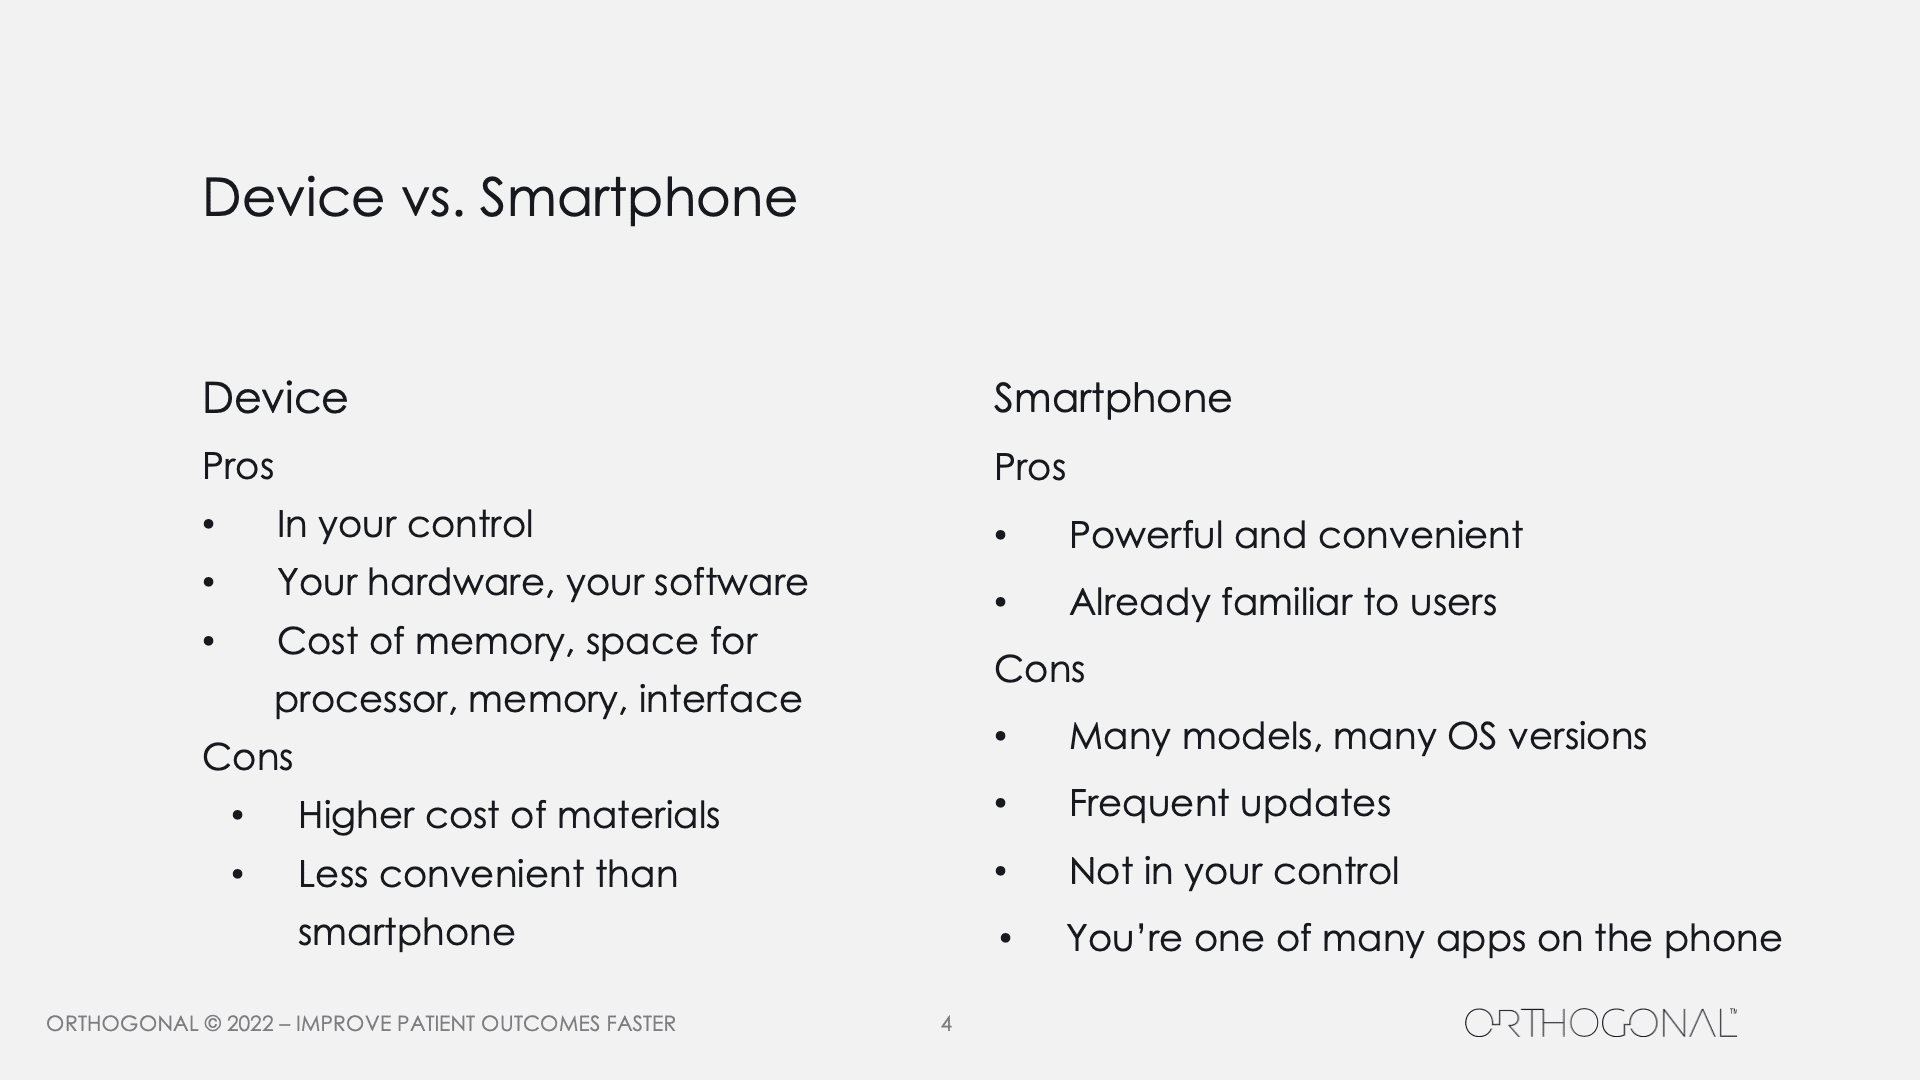 Device vs. Smartphone